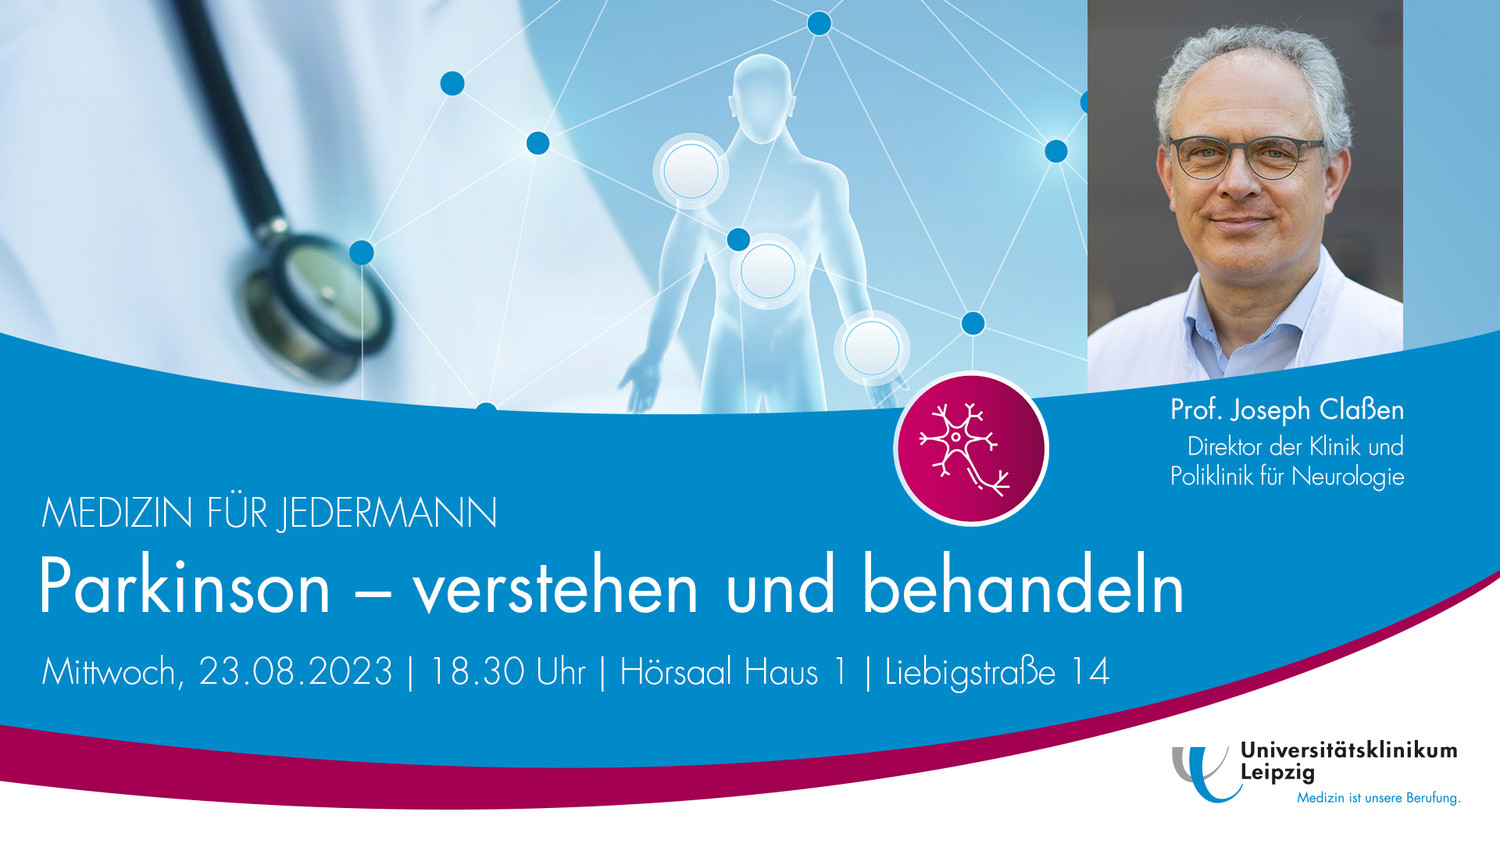 Prof. Joseph Claßen, Klinikdirektor der UKL-Neurologie, spricht bei der nächsten Veranstaltung von "Medizin für Jedermann".